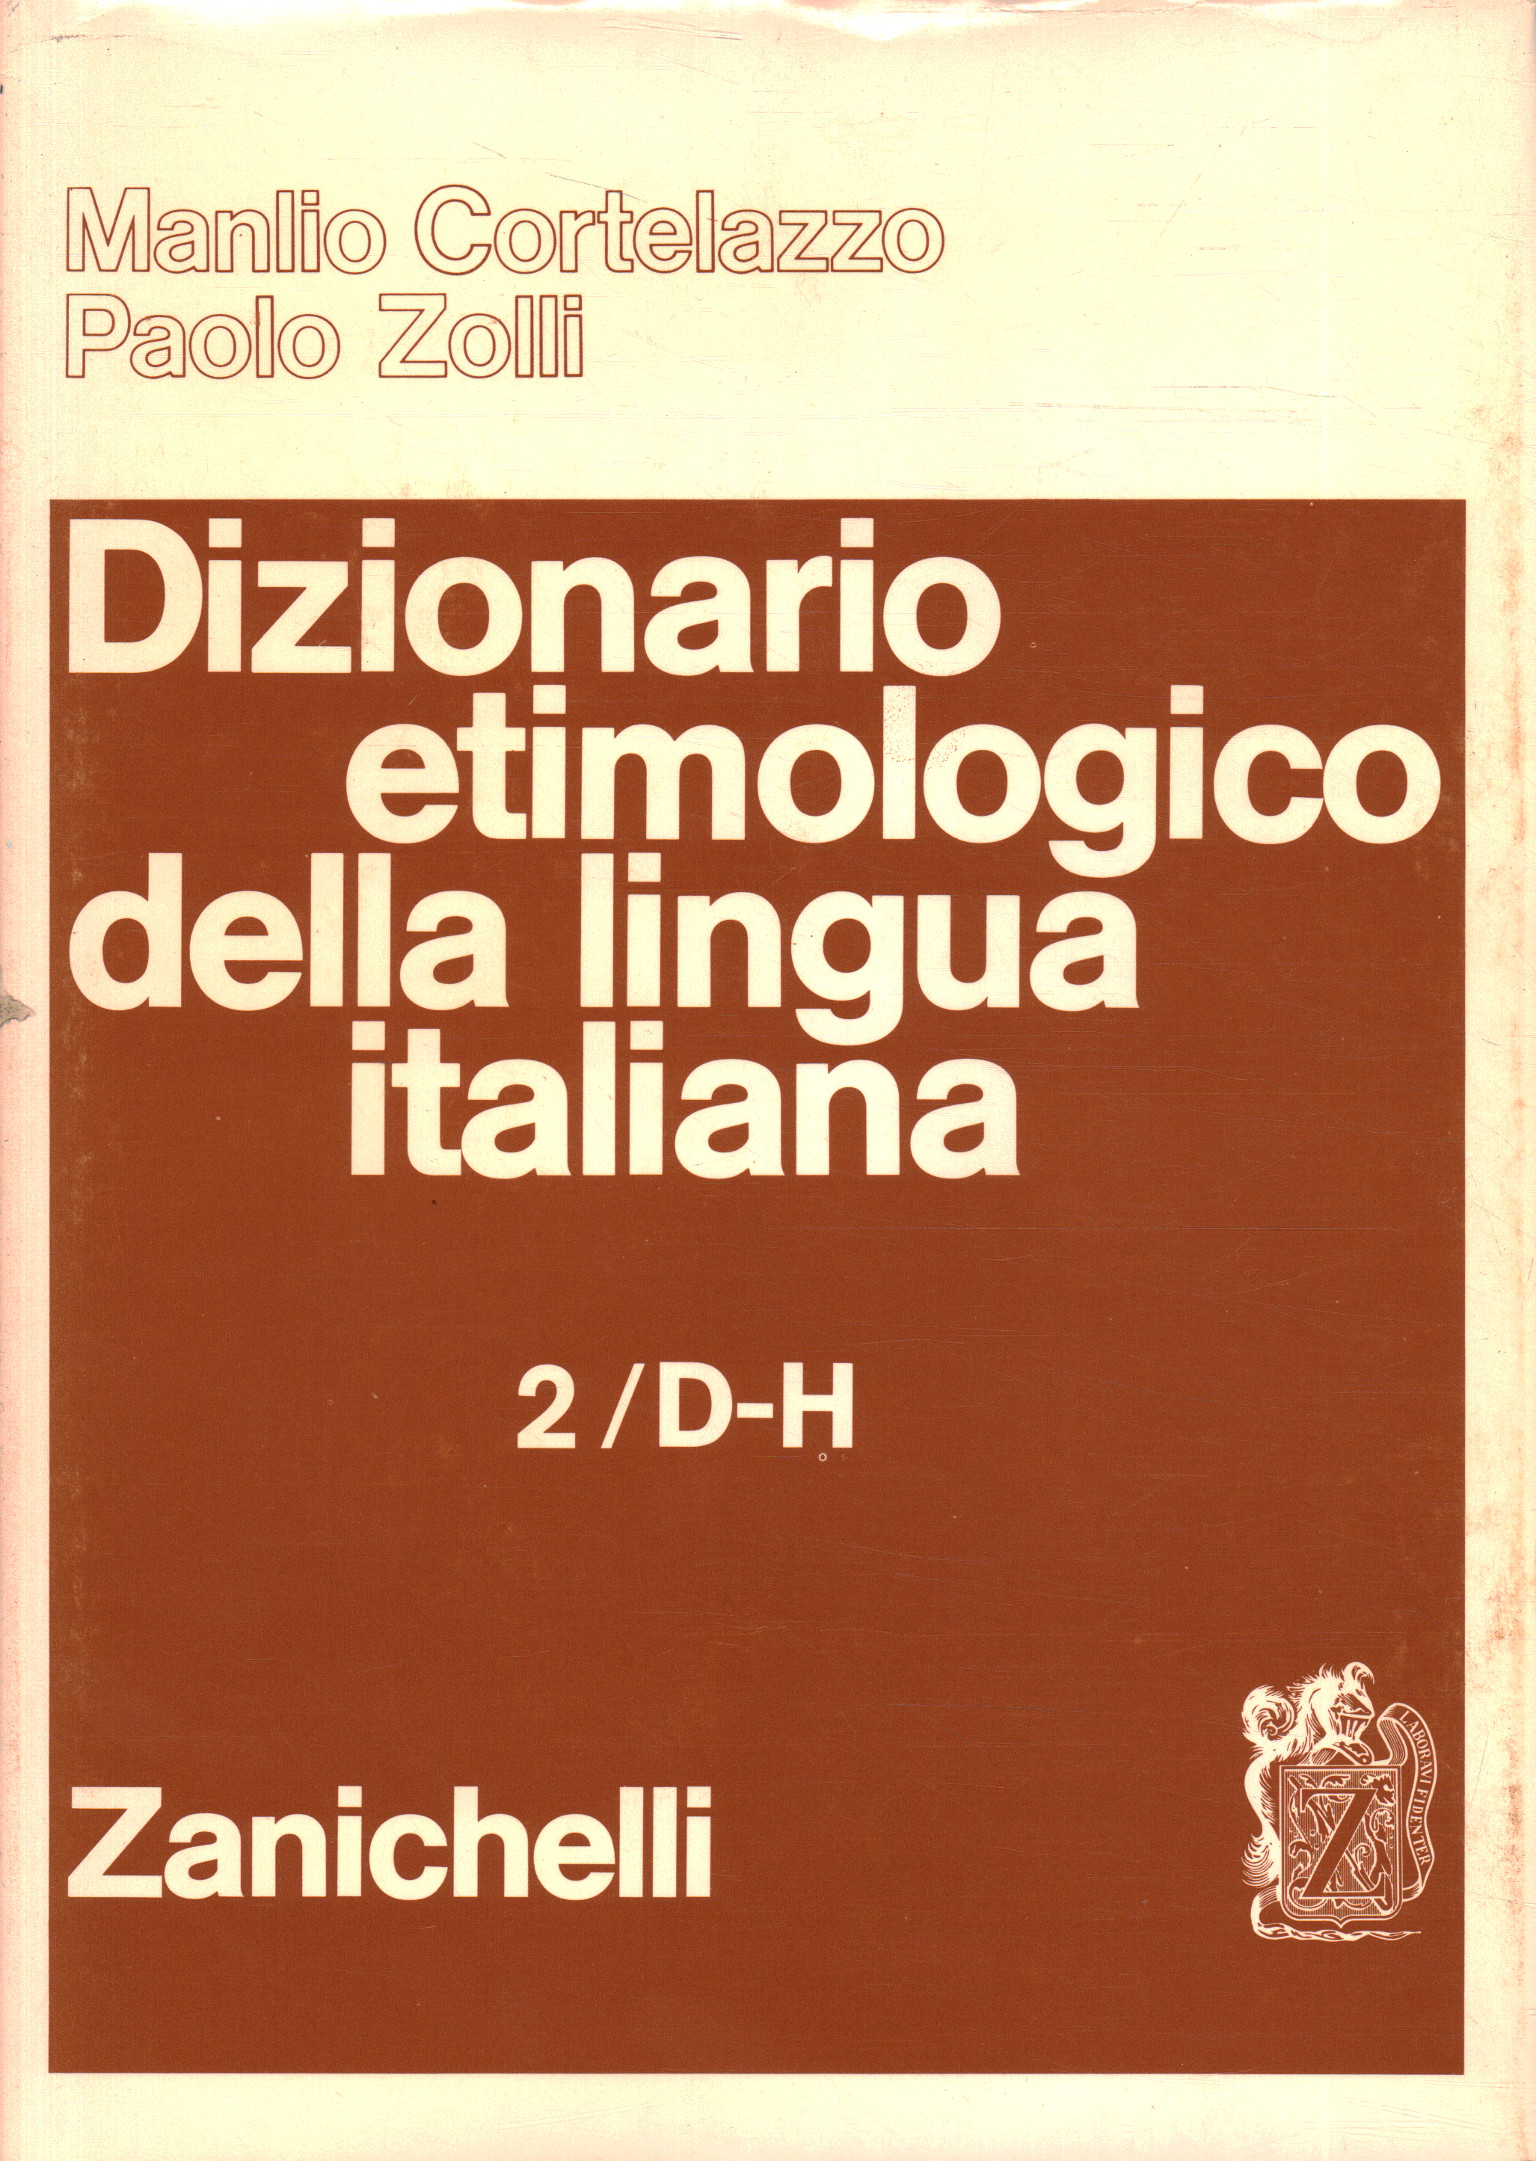 Etymologisches Wörterbuch der italienischen Sprache